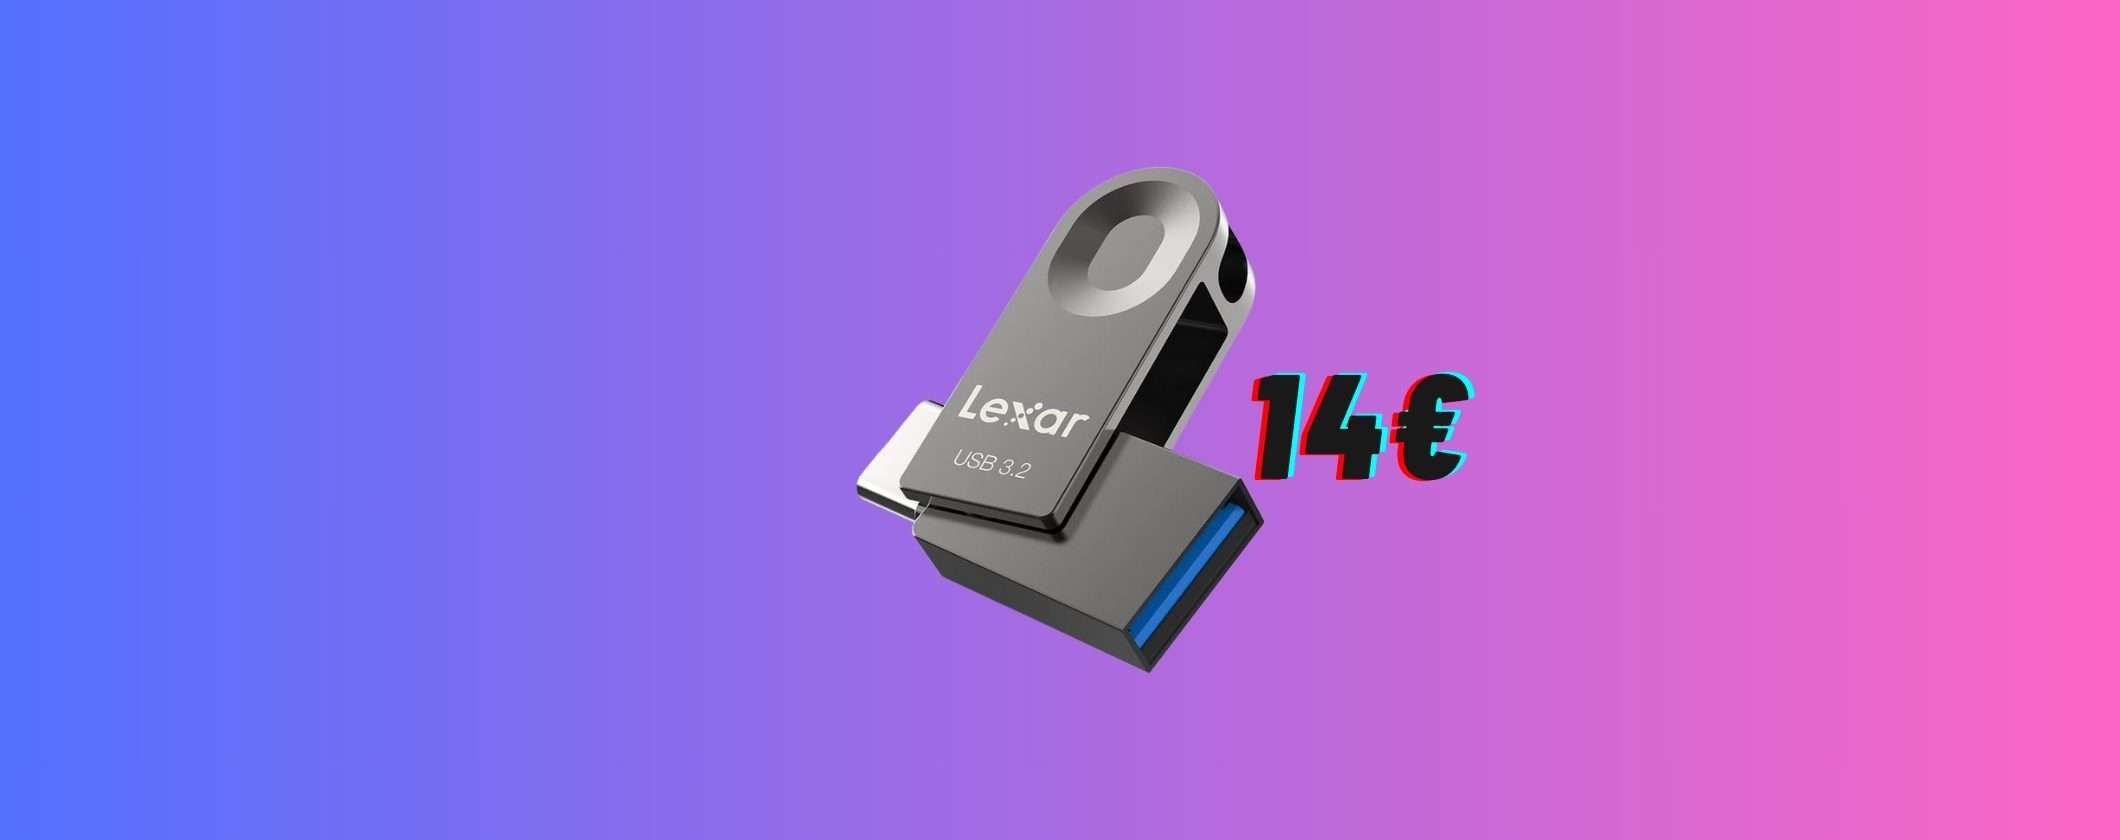 PenDrive Lexar 2 in 1 64GB: solo 14€ alle Offerte di Primavera Amazon